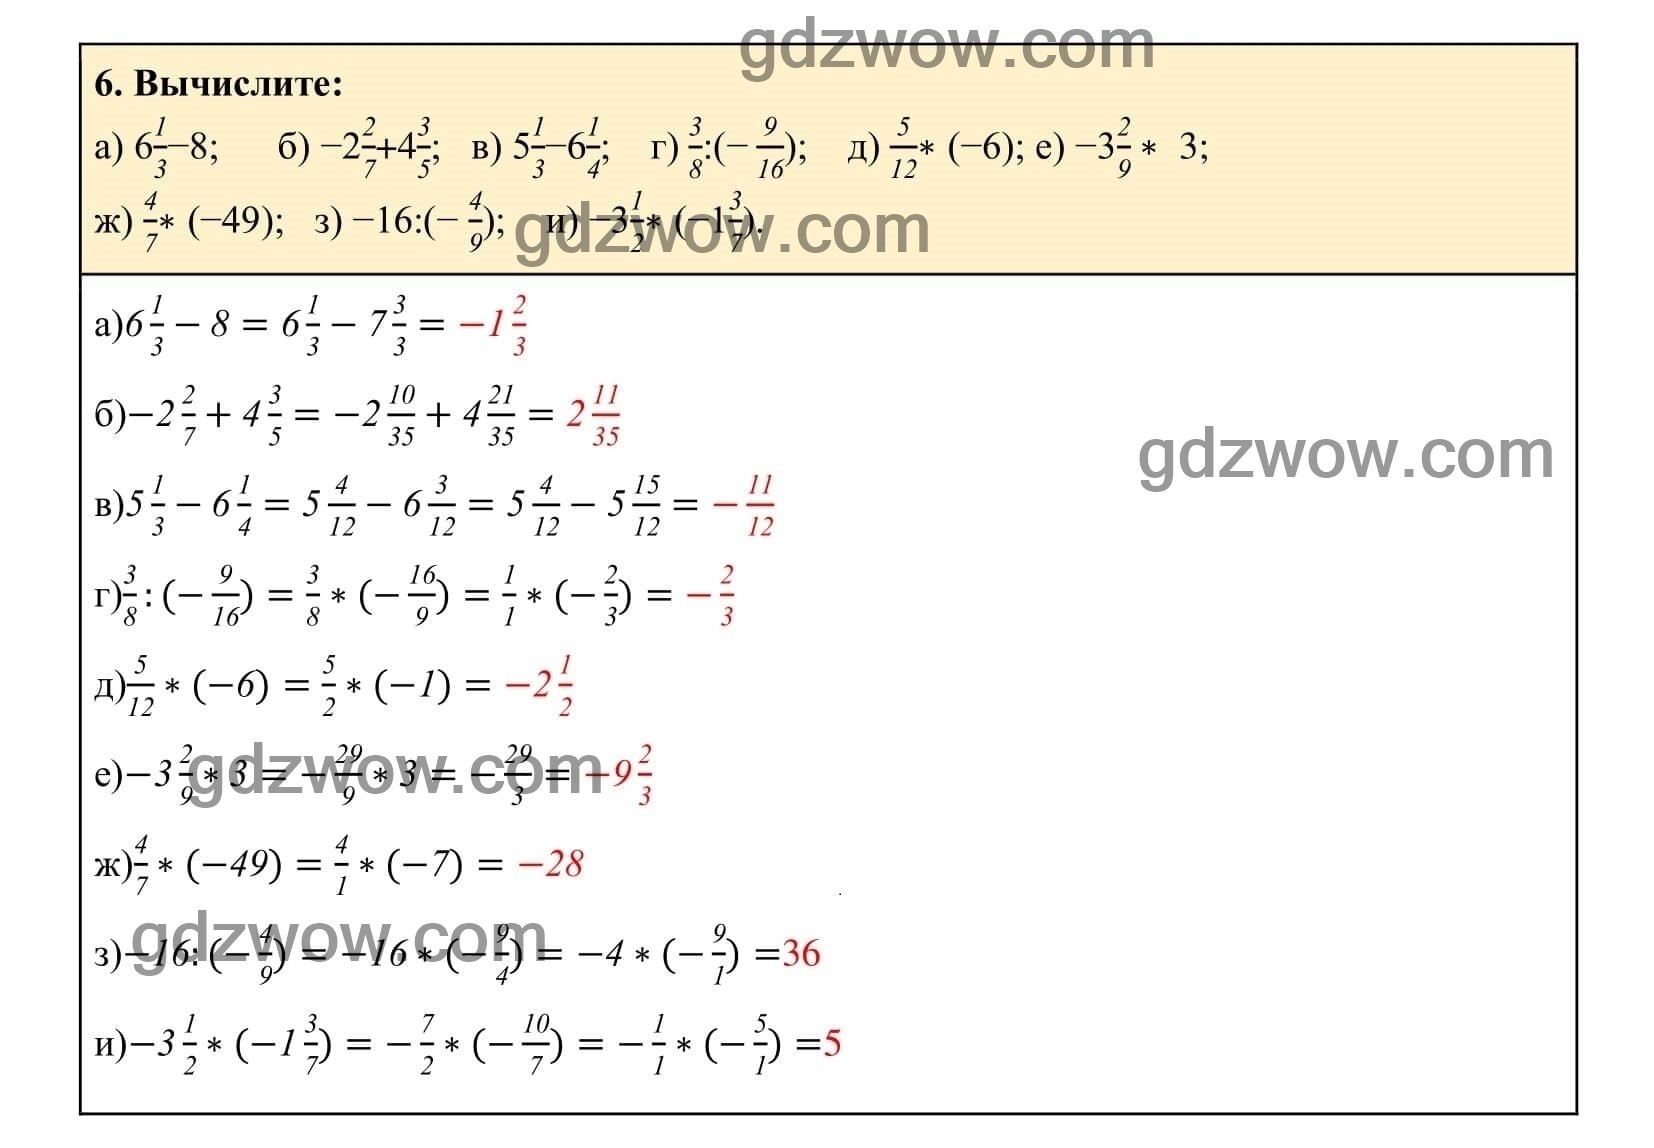 Упражнение 6 - ГДЗ по Алгебре 7 класс Учебник Макарычев (решебник) - GDZwow